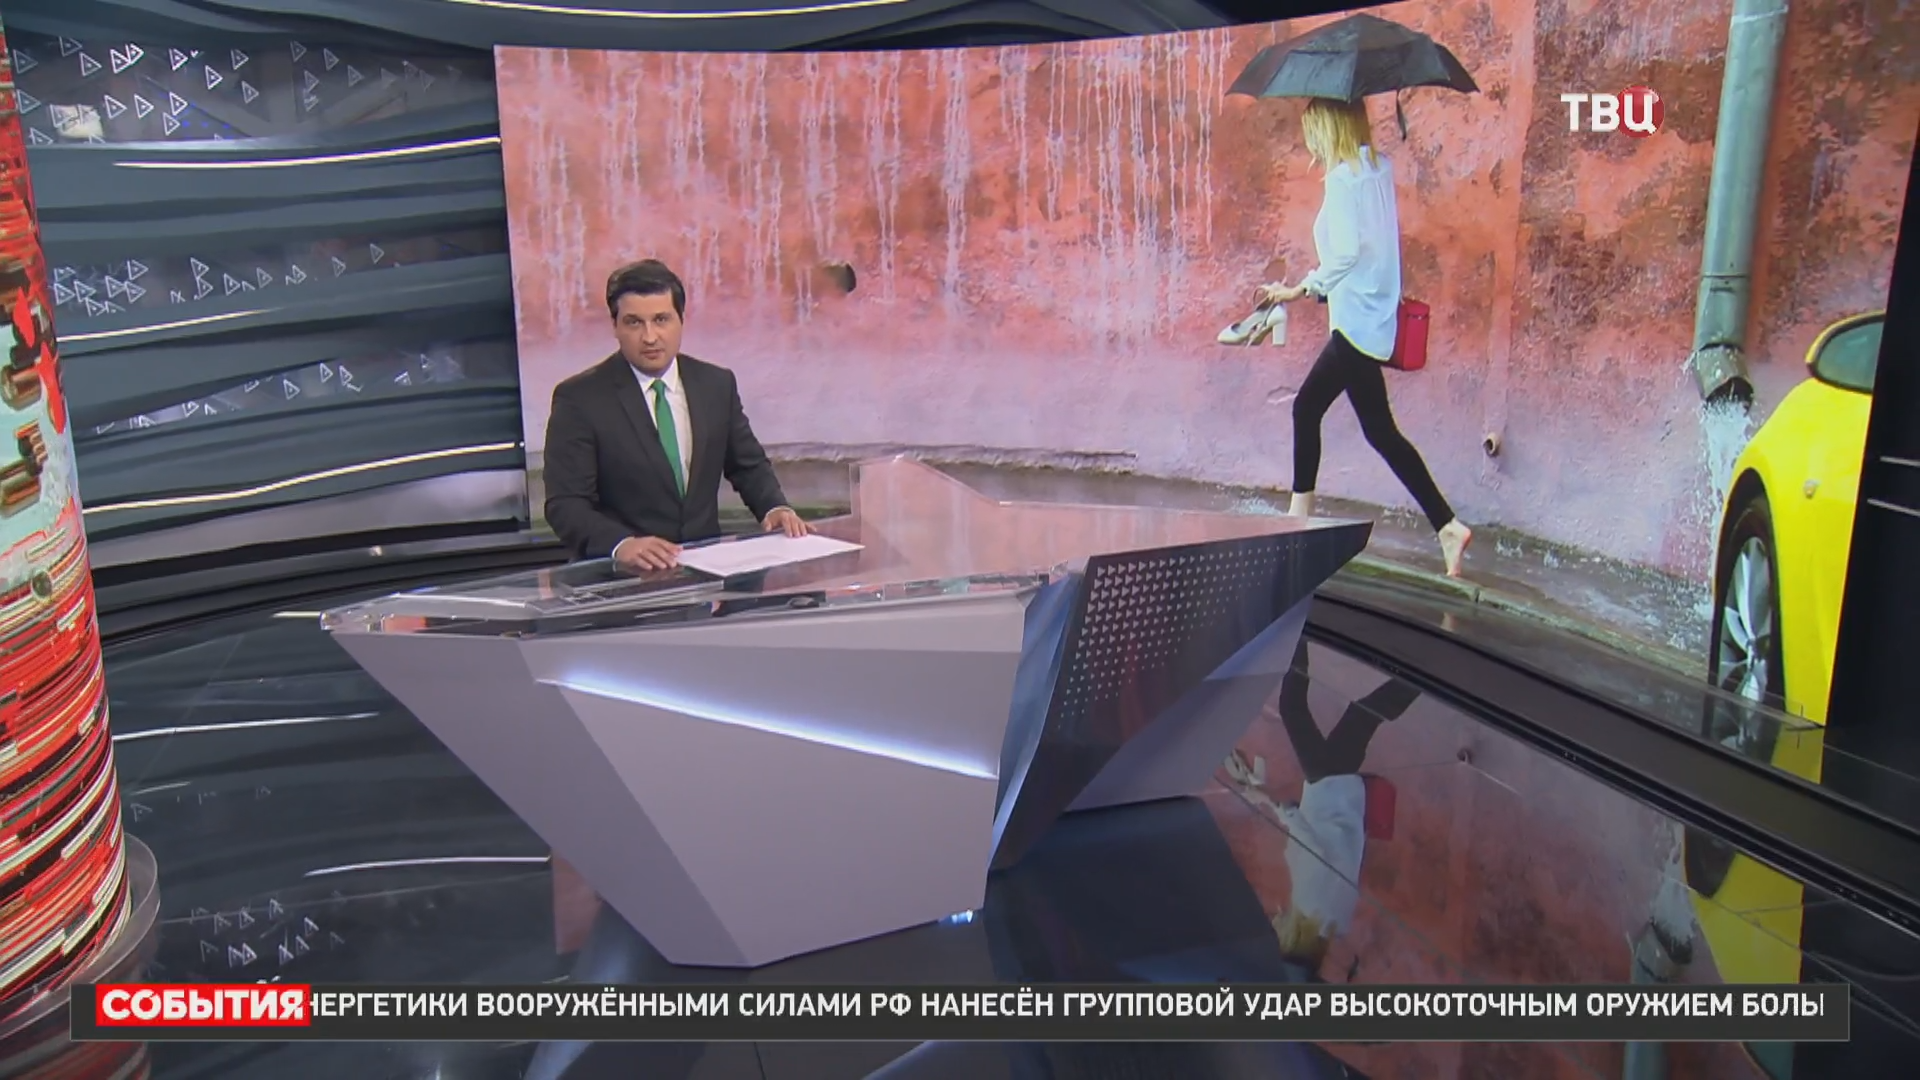 Мощный шторм "Эдгар" прошелся по Москве: как это было / События на ТВЦ